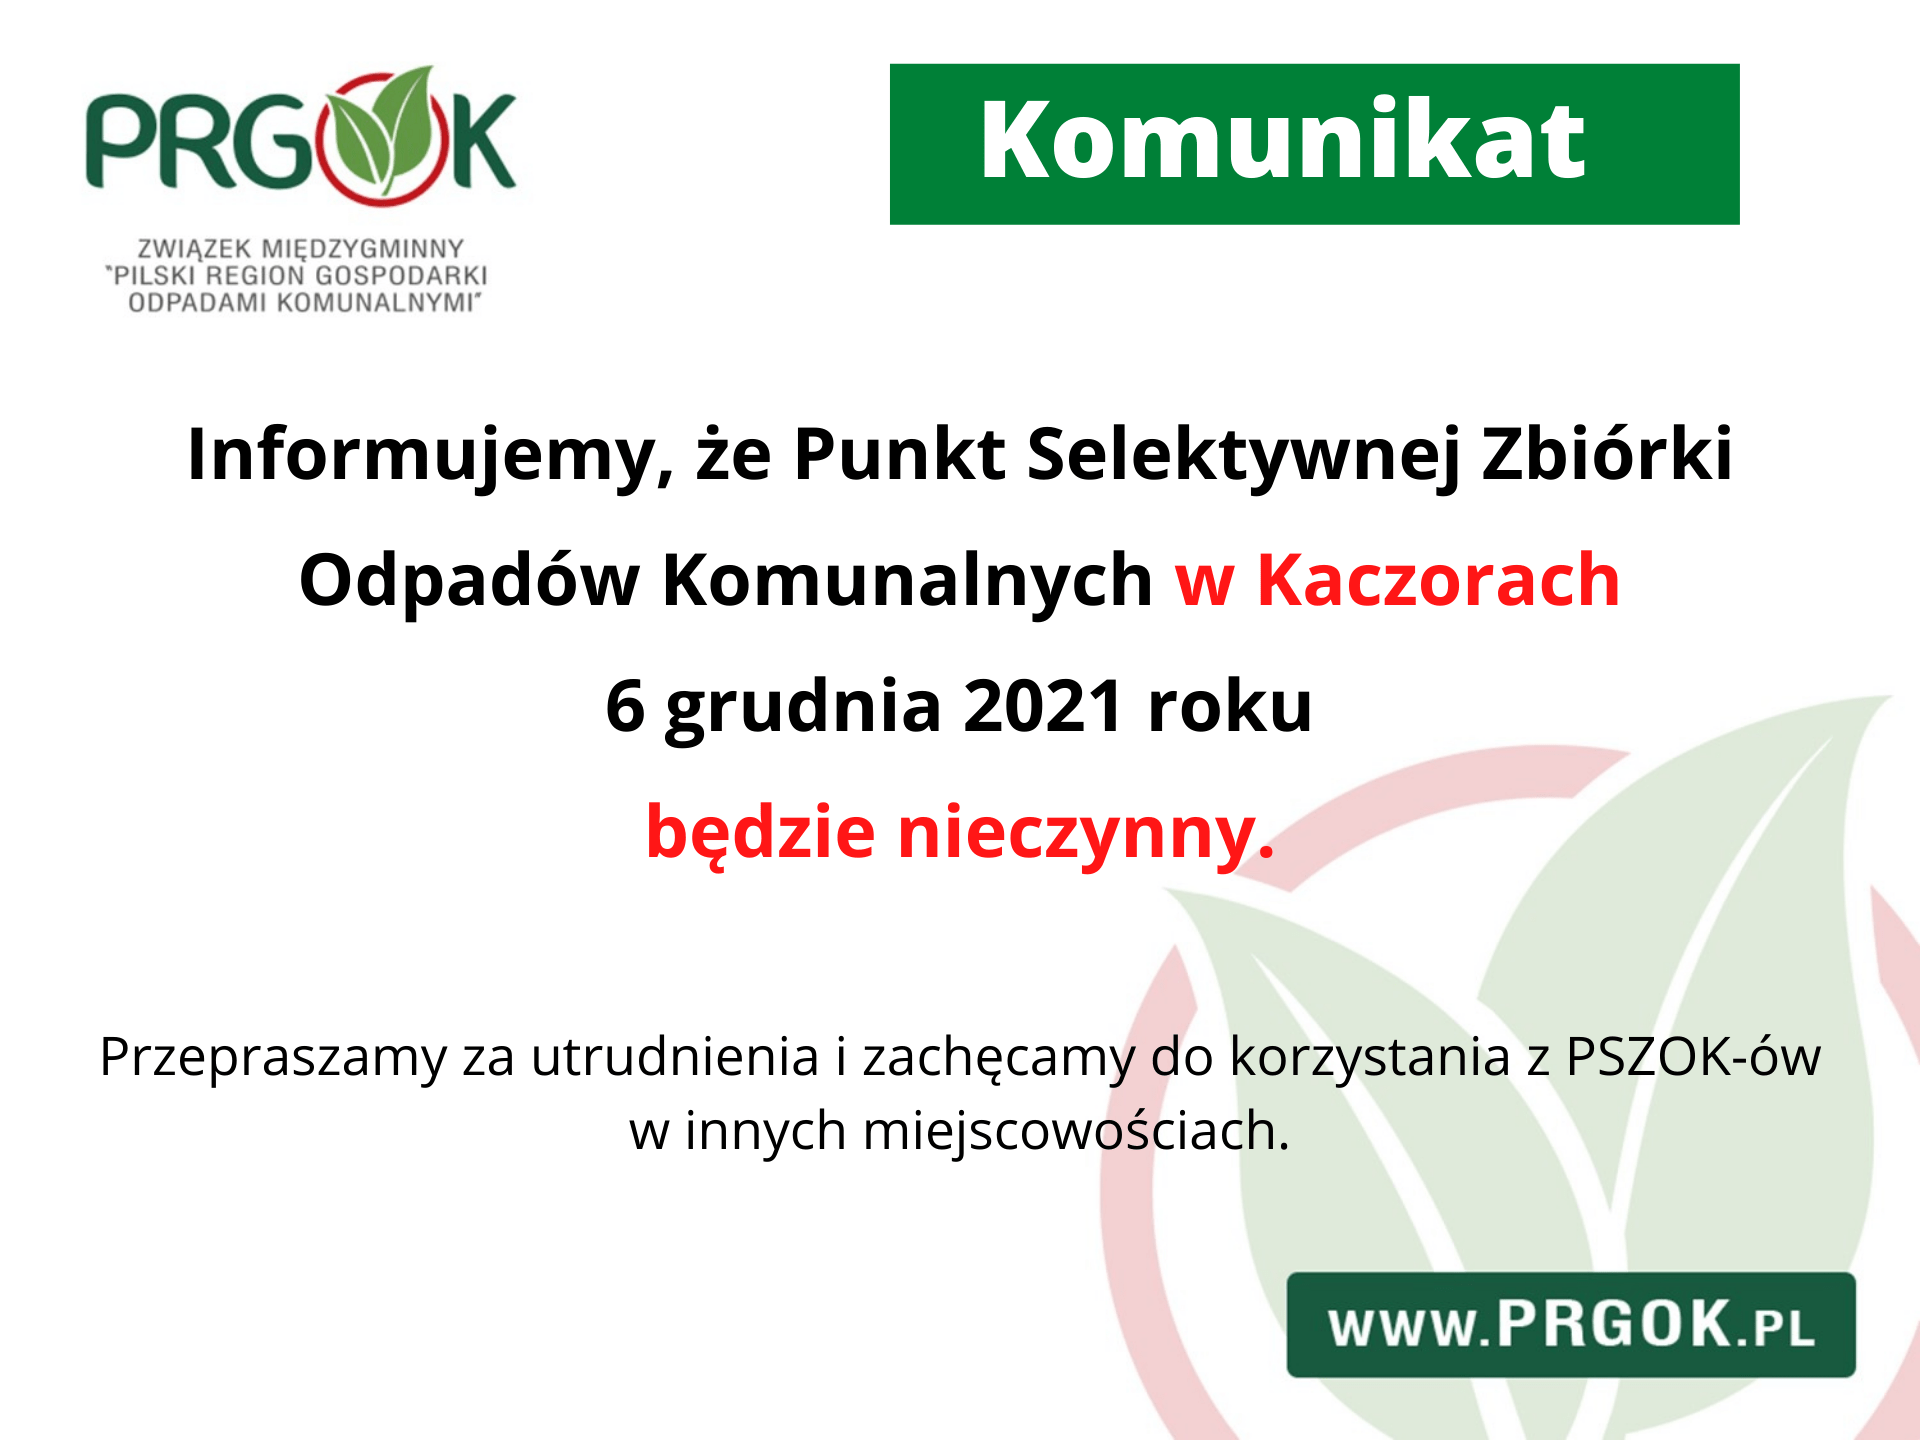 Komunikat - PRGOK w Kaczorach nieczynnym 6 grudnia 2021 roku